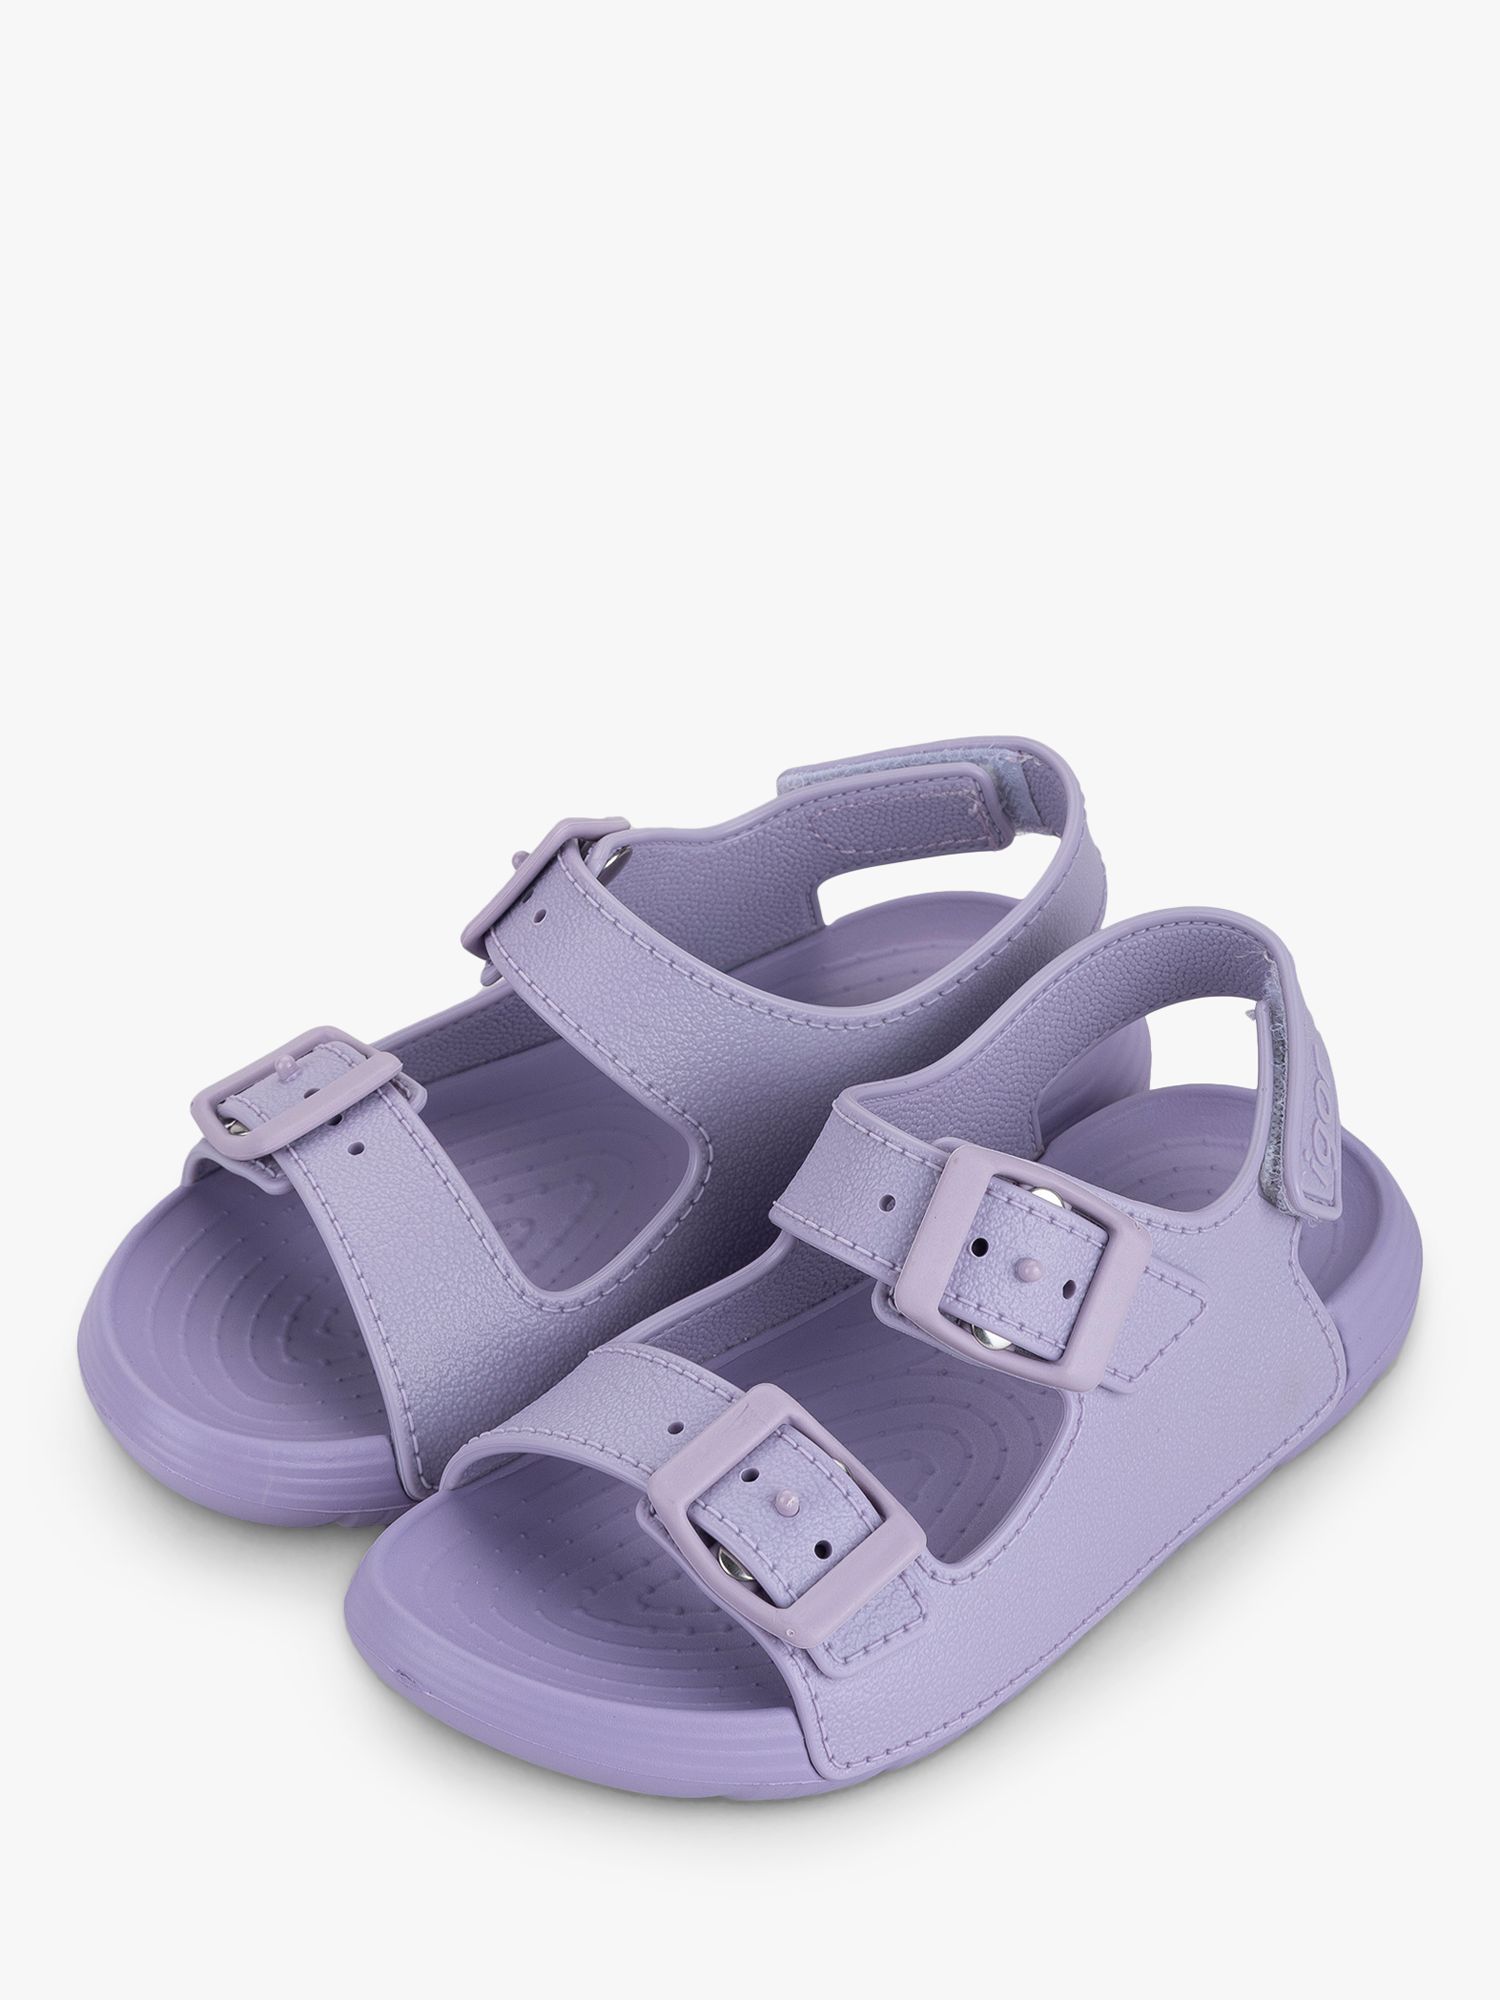 IGOR Maui Lightweight Waterproof Sandals, Lilac, EU28